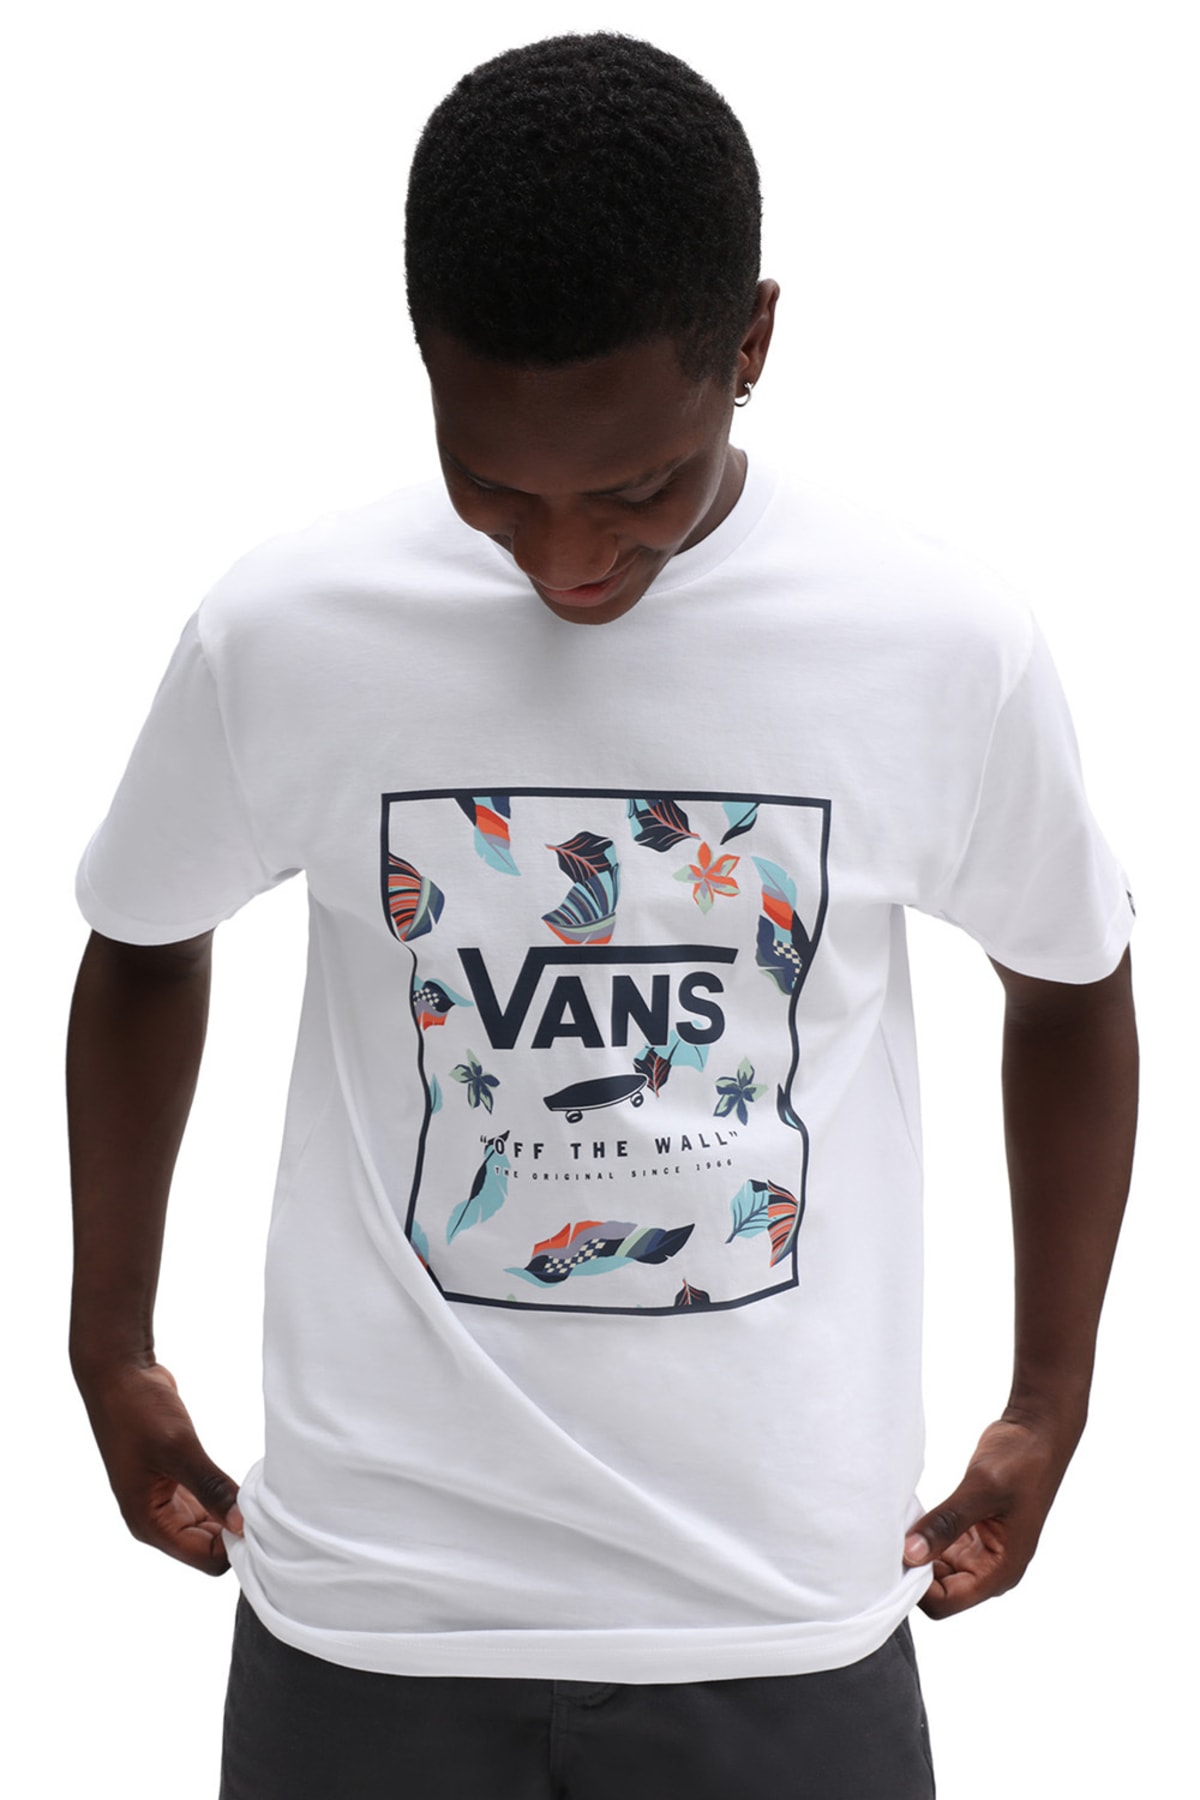 تی شرت سفید یقه خدمه طرح چاپی مدل گرافیکی آستین کوتاه مردانه ونس Vans (برند آمریکا)